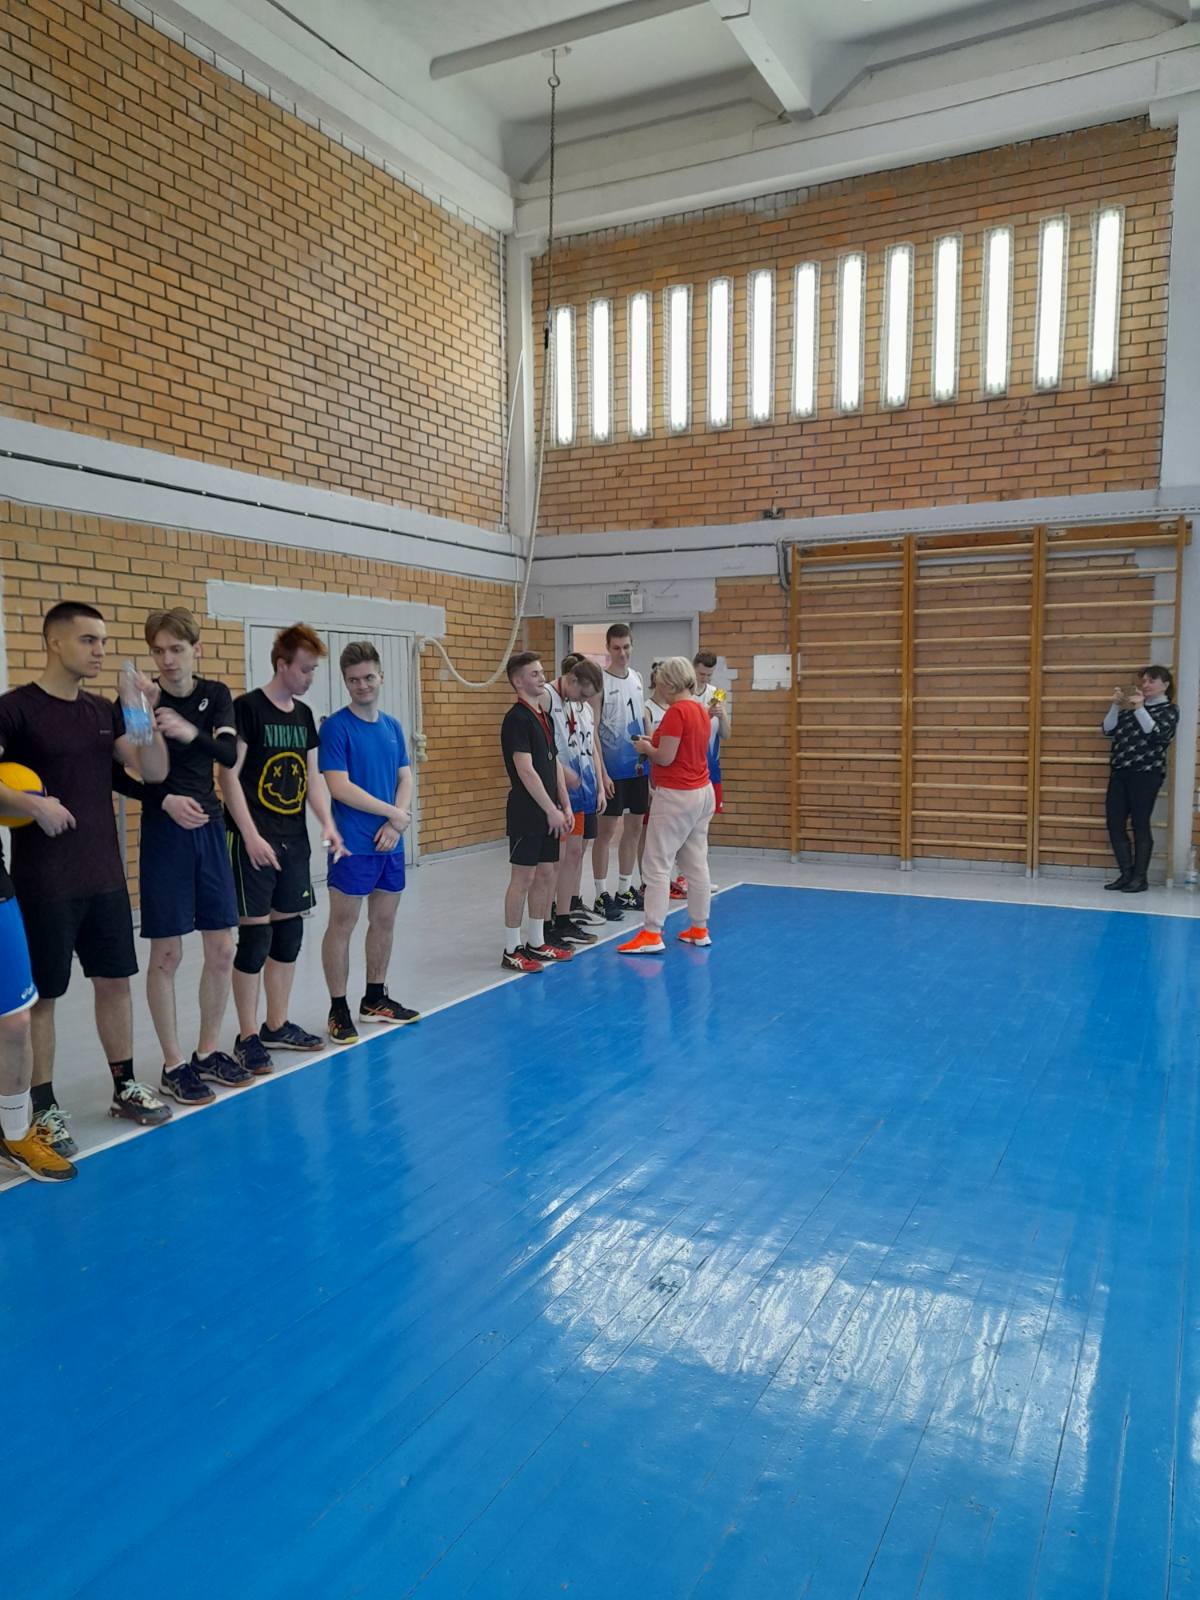 В Московском районе г. Минска прошли соревнования по волейболу среди мужчин в программе Межвузовской спартакиады среди студентов жилого комплекса «Студенческая деревня».